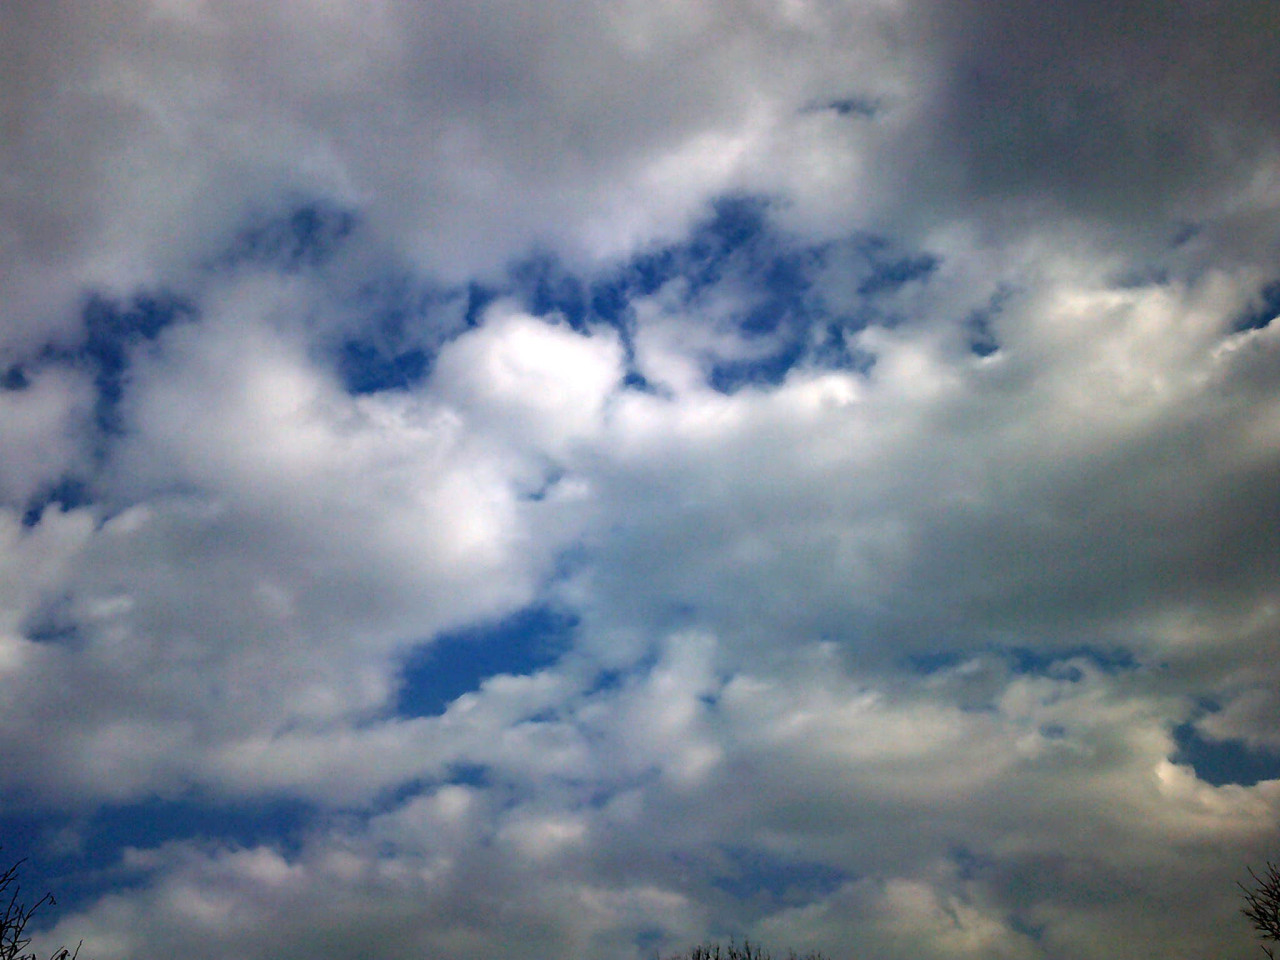 Meteo Siracusa: oggi mercoledì 20 Settembre prevalentemente nuvoloso per velature.